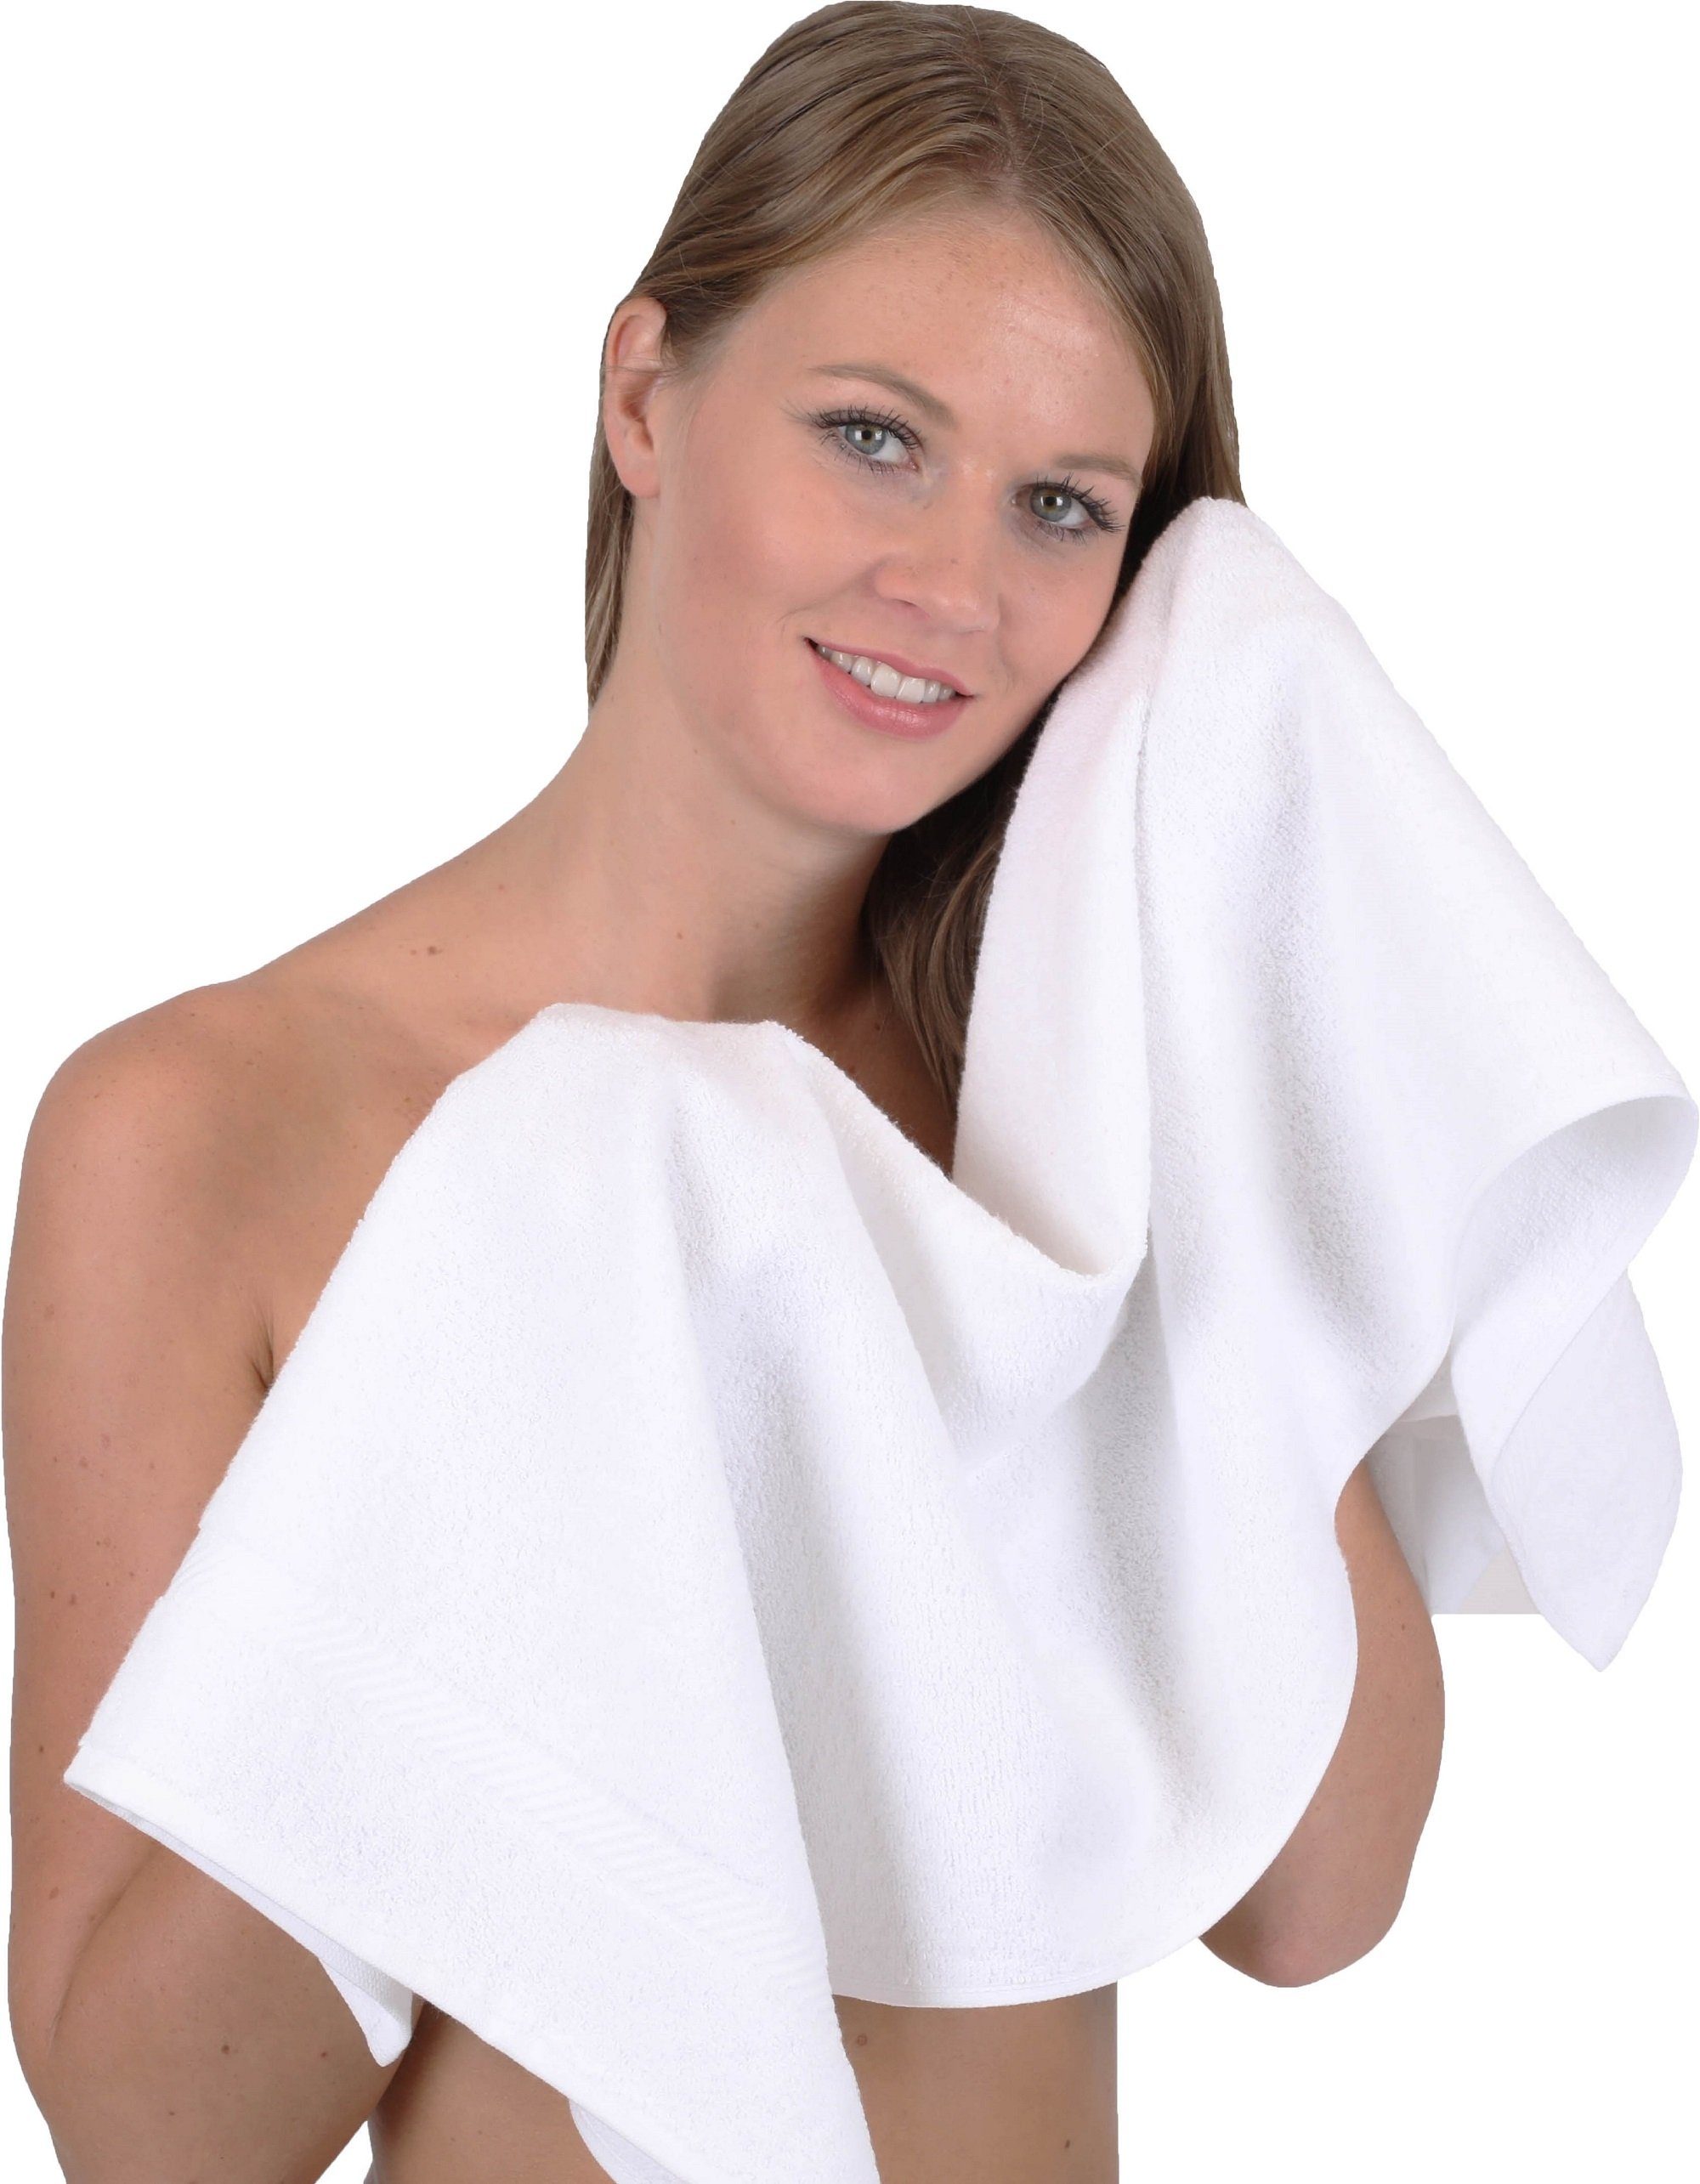 Kinder Babypflege Betz Handtücher 6 Stück Handtücher Palermo 100% Baumwolle Handtuch-Set Farbe weiß und grün